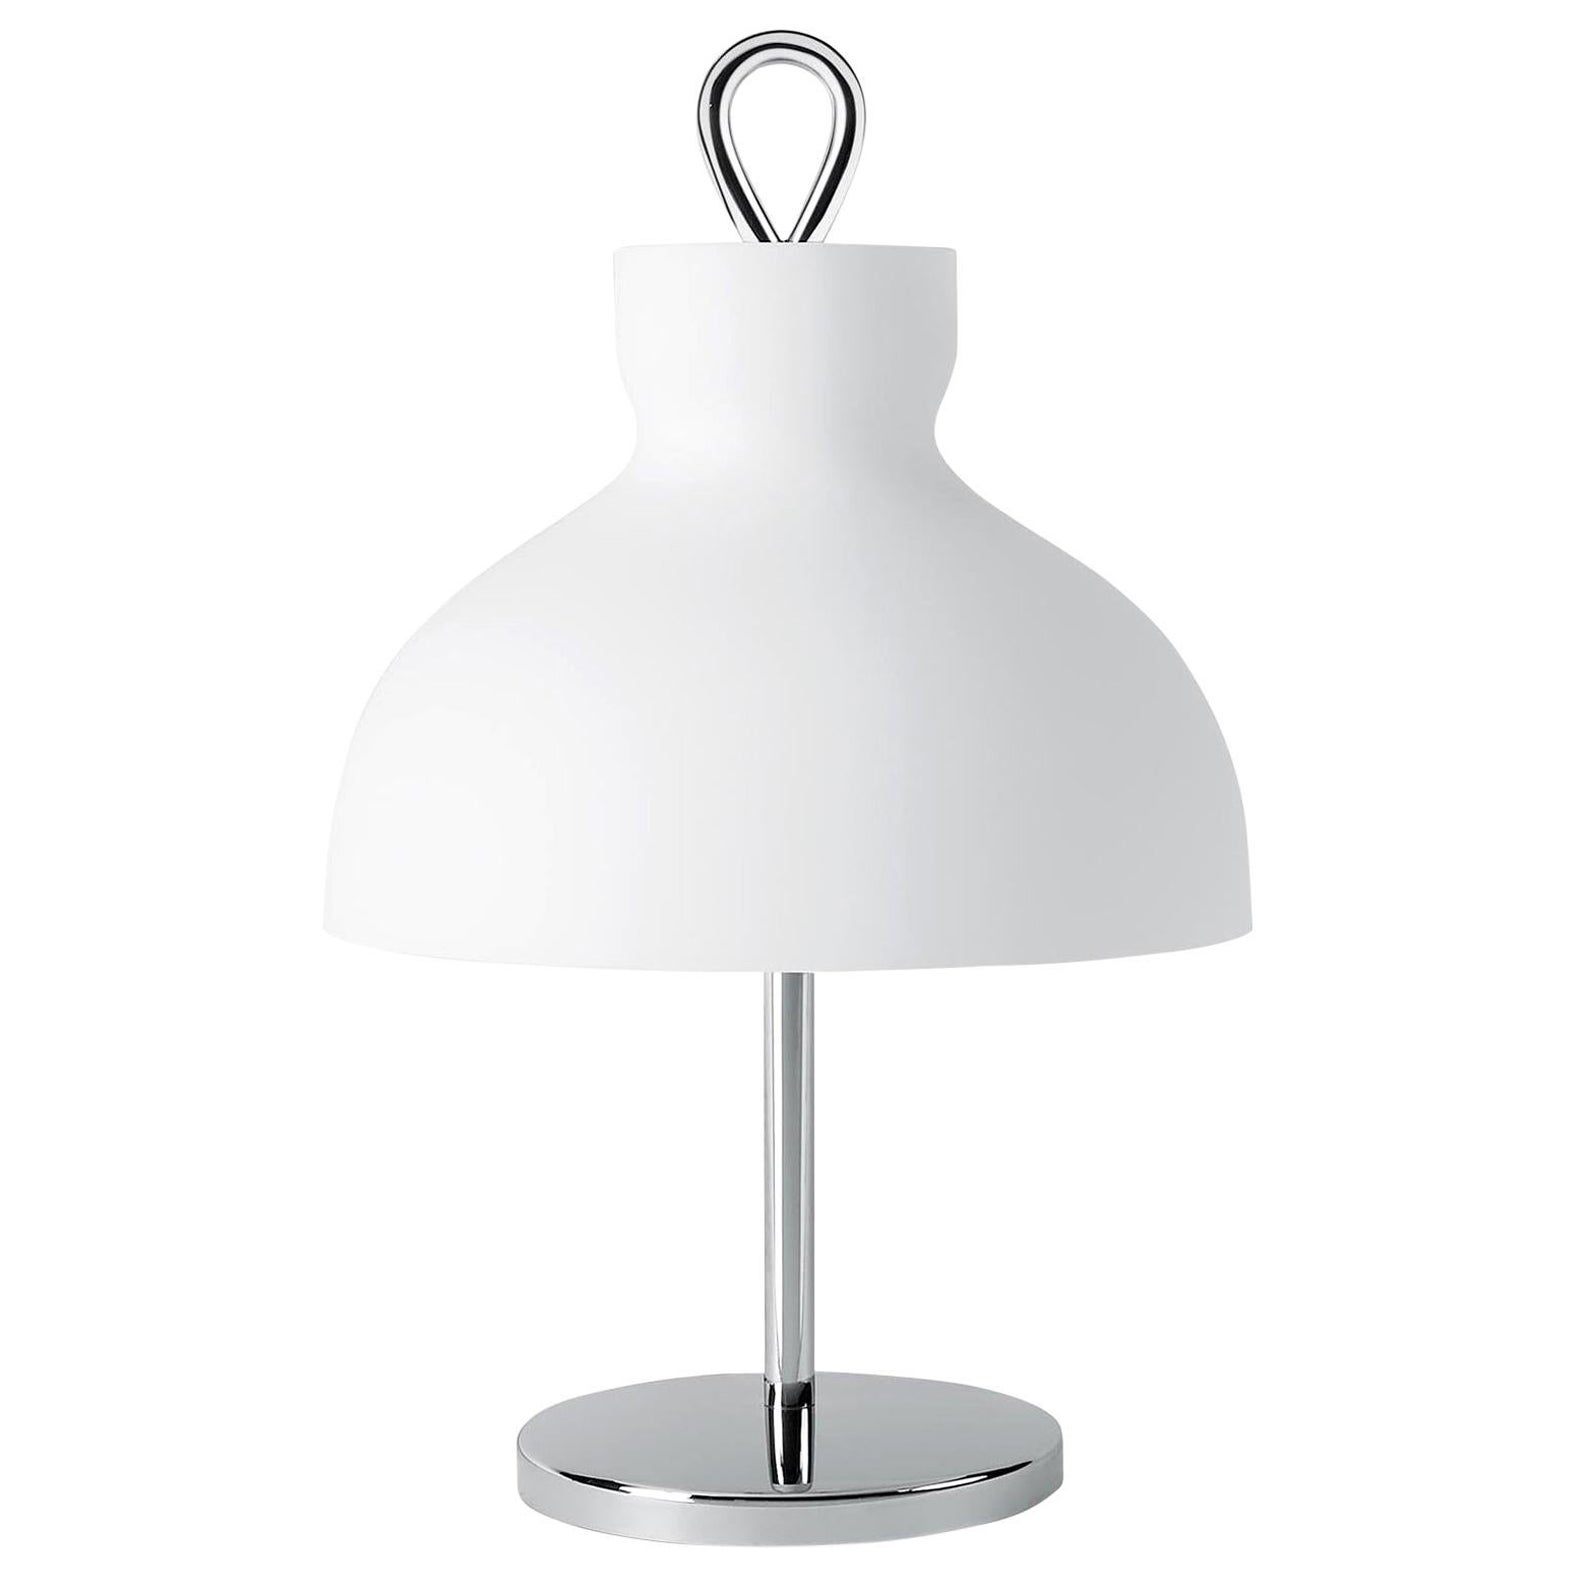 Ignazio Gardella 'Arenzano Bassa' Table Lamp in Glass and Satin Nickel For Sale 2